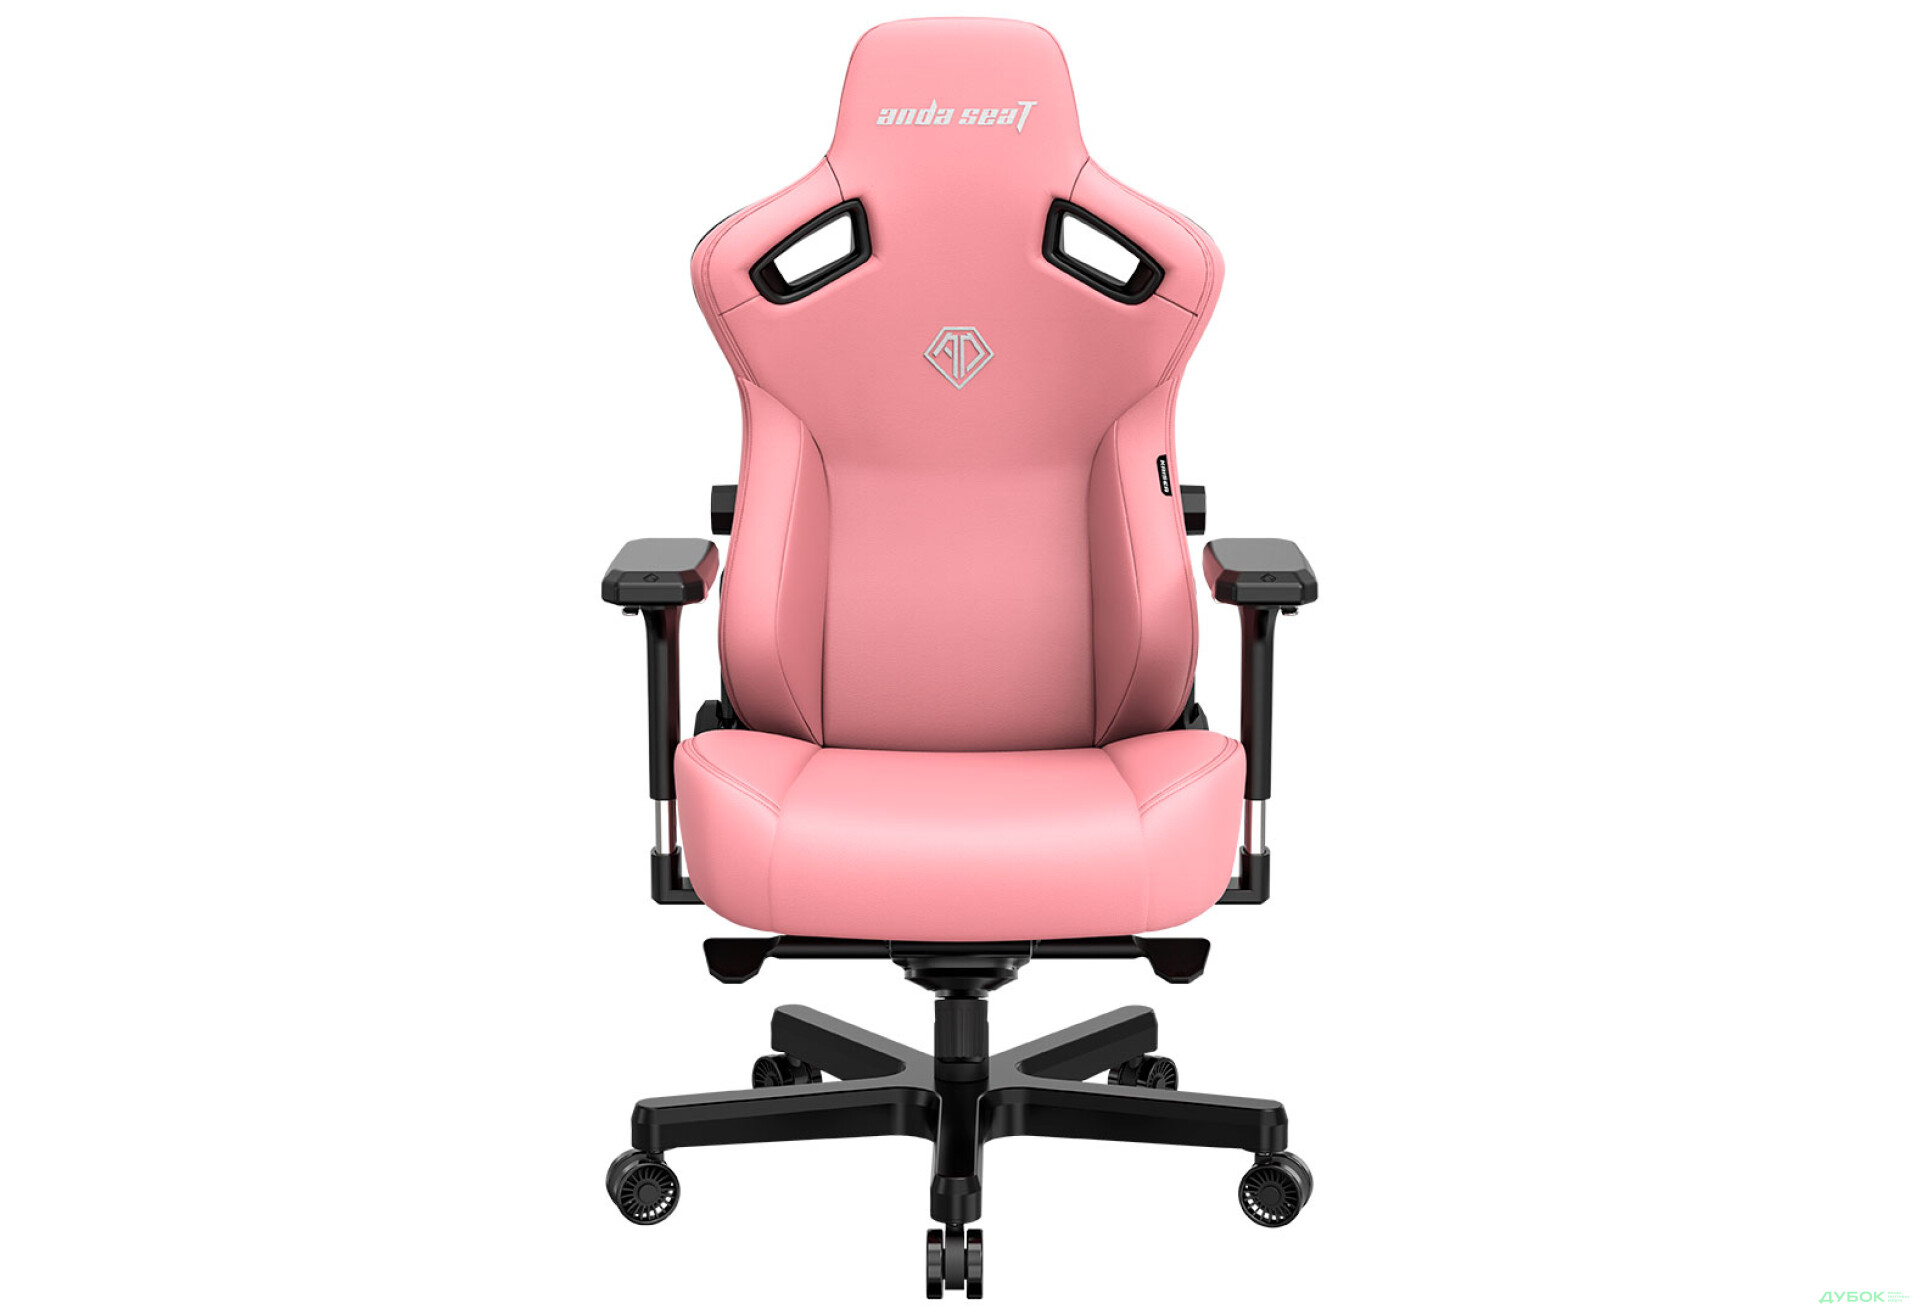 Фото 2 - Компьютерное кресло Anda Seat Kaiser 3 72x57x136 см игровое, розовое